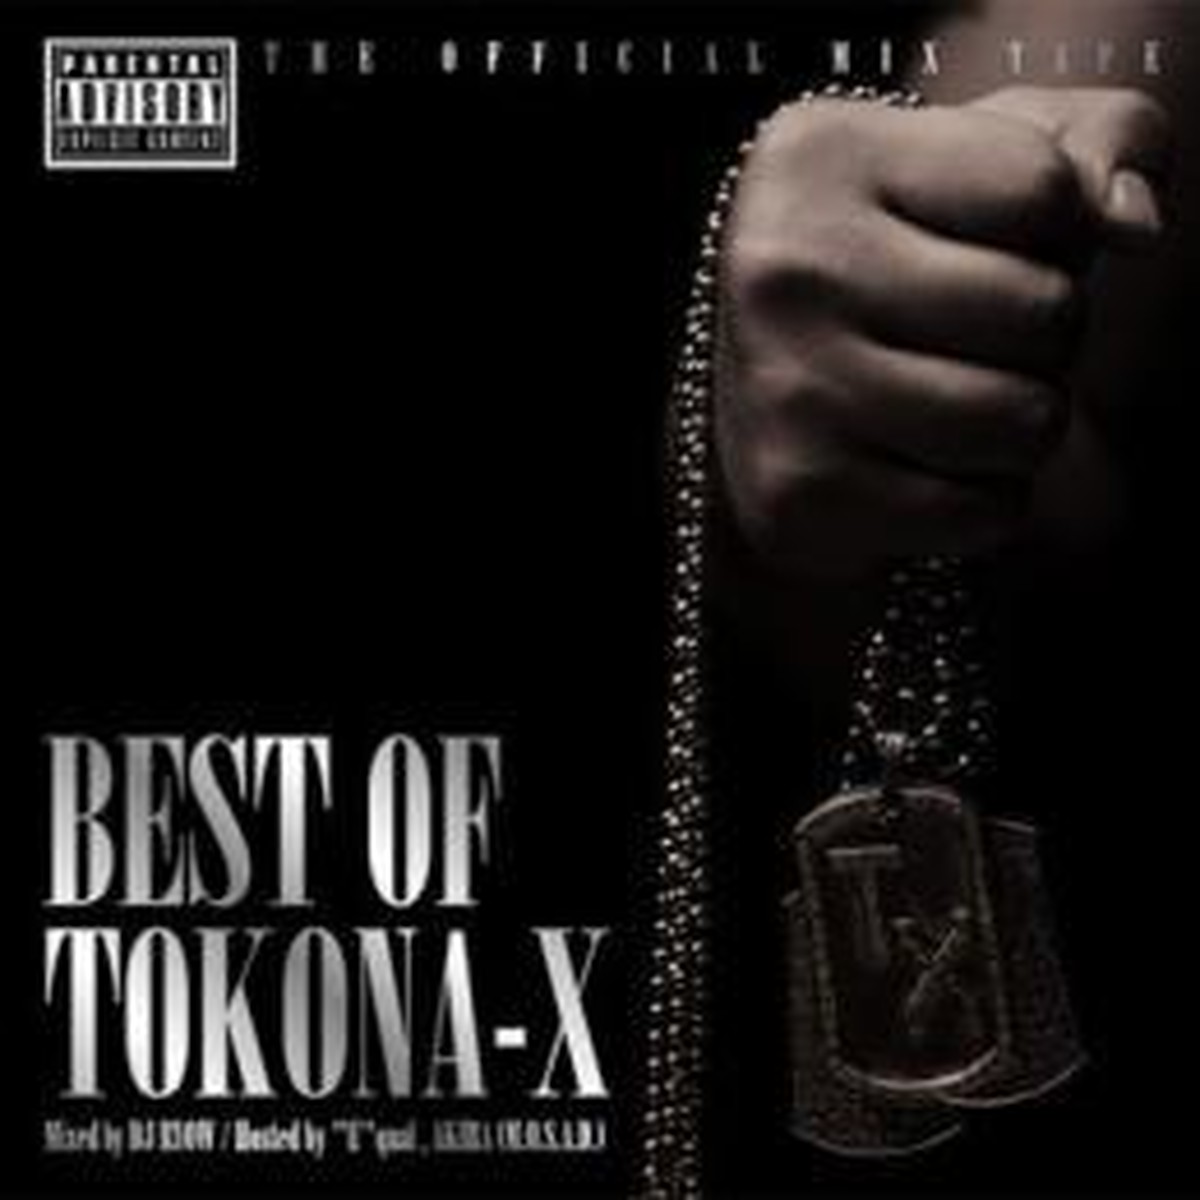 Best Of Tokona X Mixed By Dj Ryow Alpha Plus Nagoya